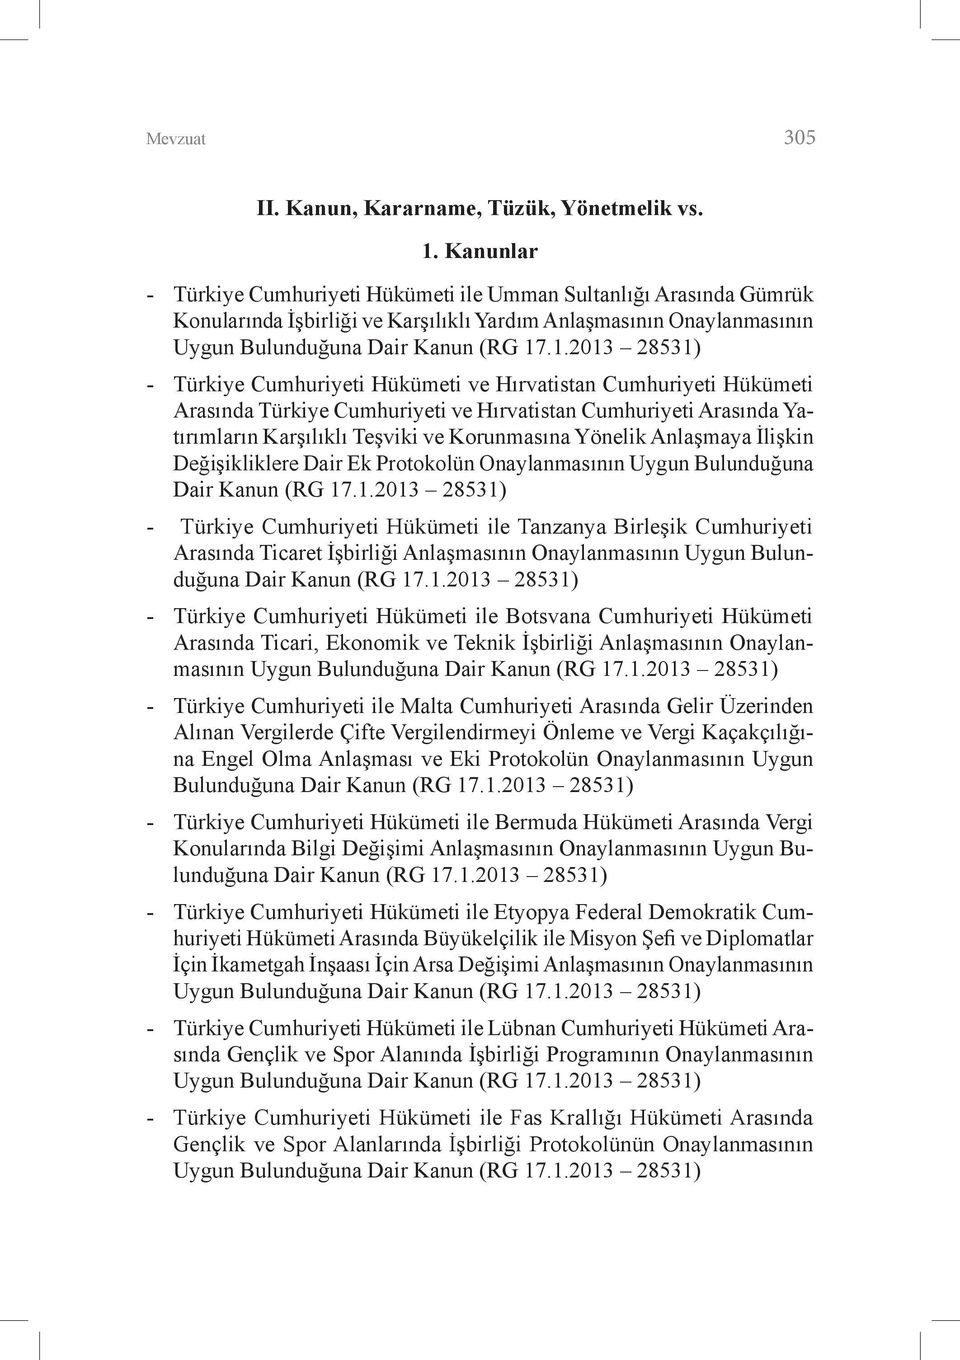 .1.2013 28531) - Türkiye Cumhuriyeti Hükümeti ve Hırvatistan Cumhuriyeti Hükümeti Arasında Türkiye Cumhuriyeti ve Hırvatistan Cumhuriyeti Arasında Yatırımların Karşılıklı Teşviki ve Korunmasına